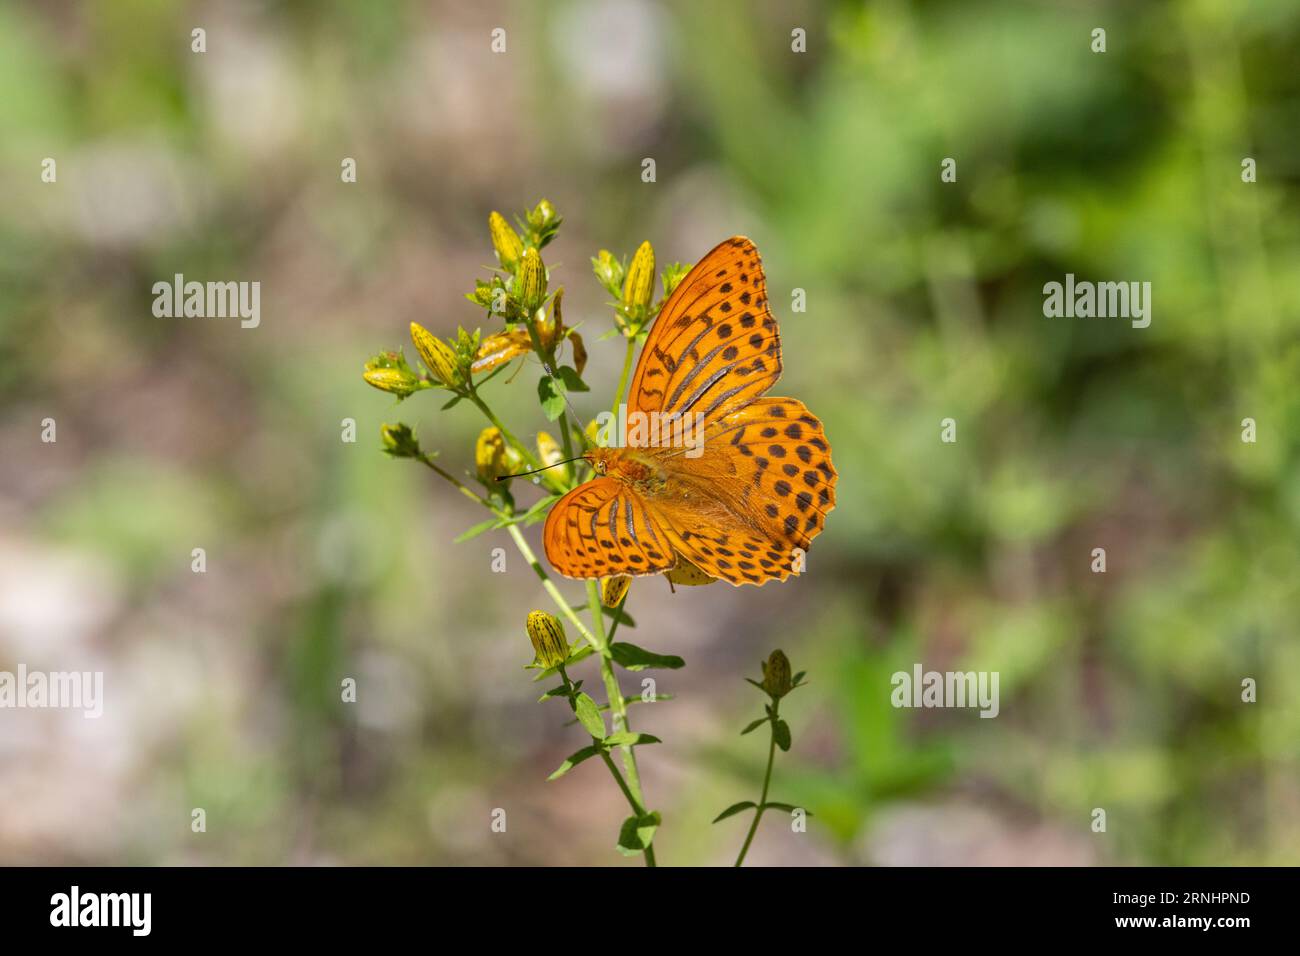 Farfalla arancione con macchie balck nelle ali seduto su una pianta Foto Stock